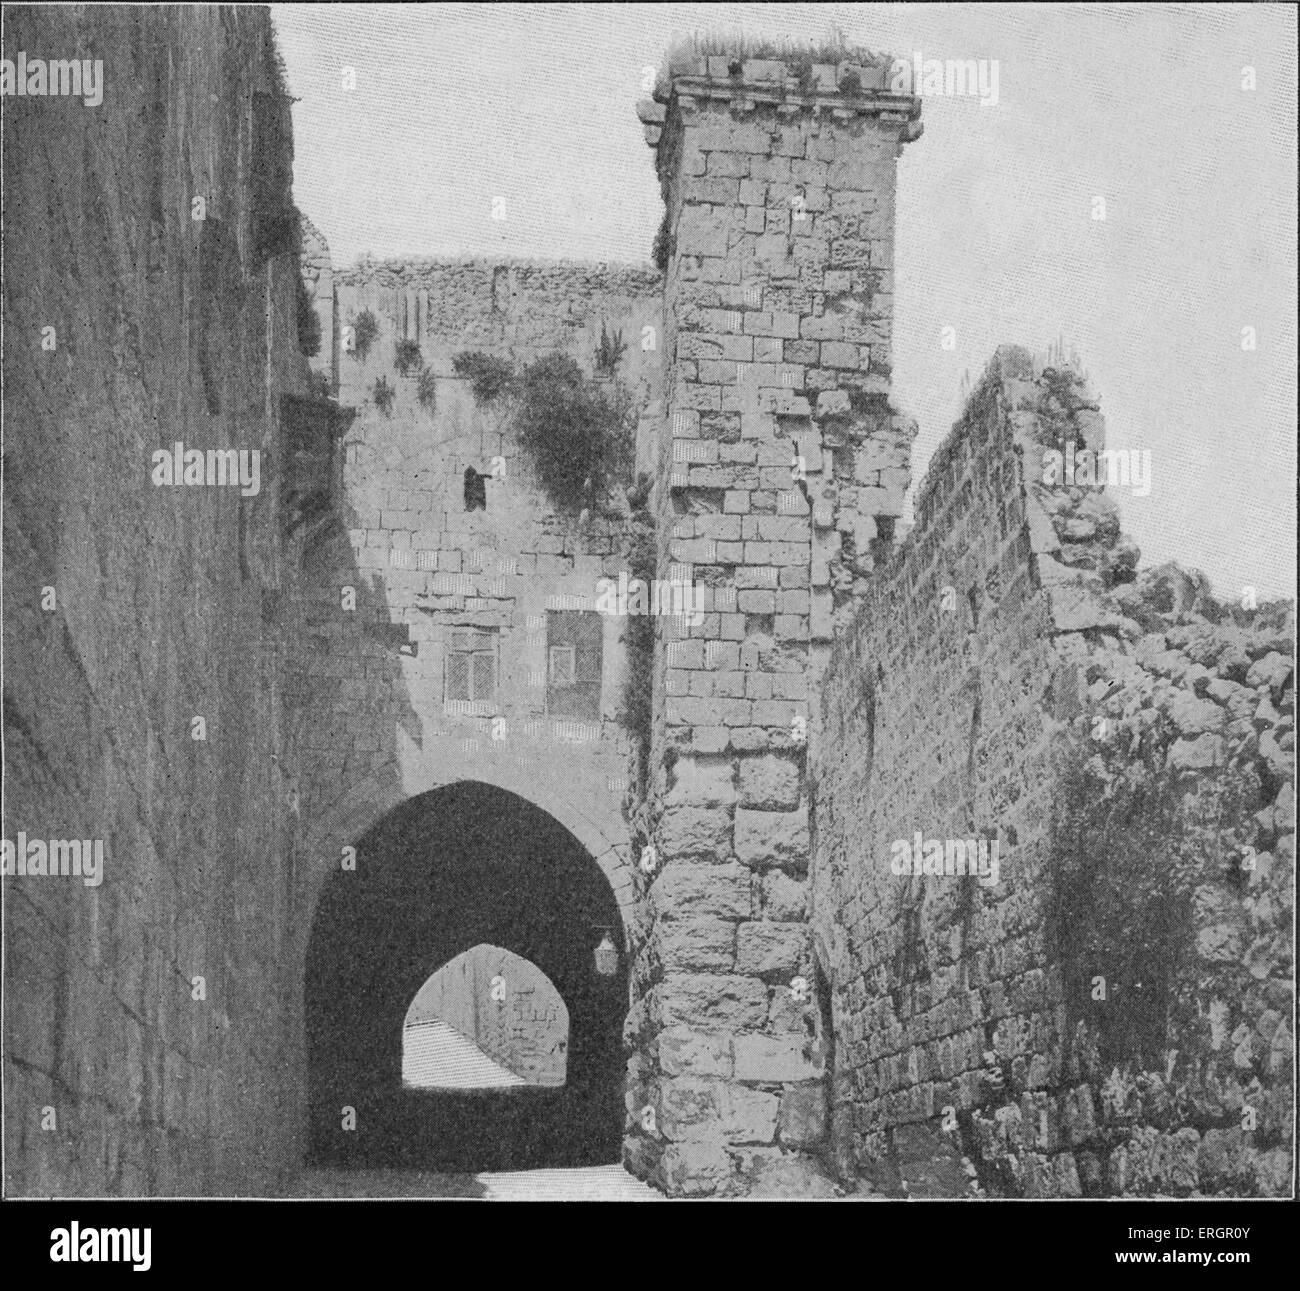 La forteresse Antonia, également connu sous le nom de la tour d'Antonia, Jérusalem, au début du xxe siècle. Caserne militaire construite par Hérode le Banque D'Images